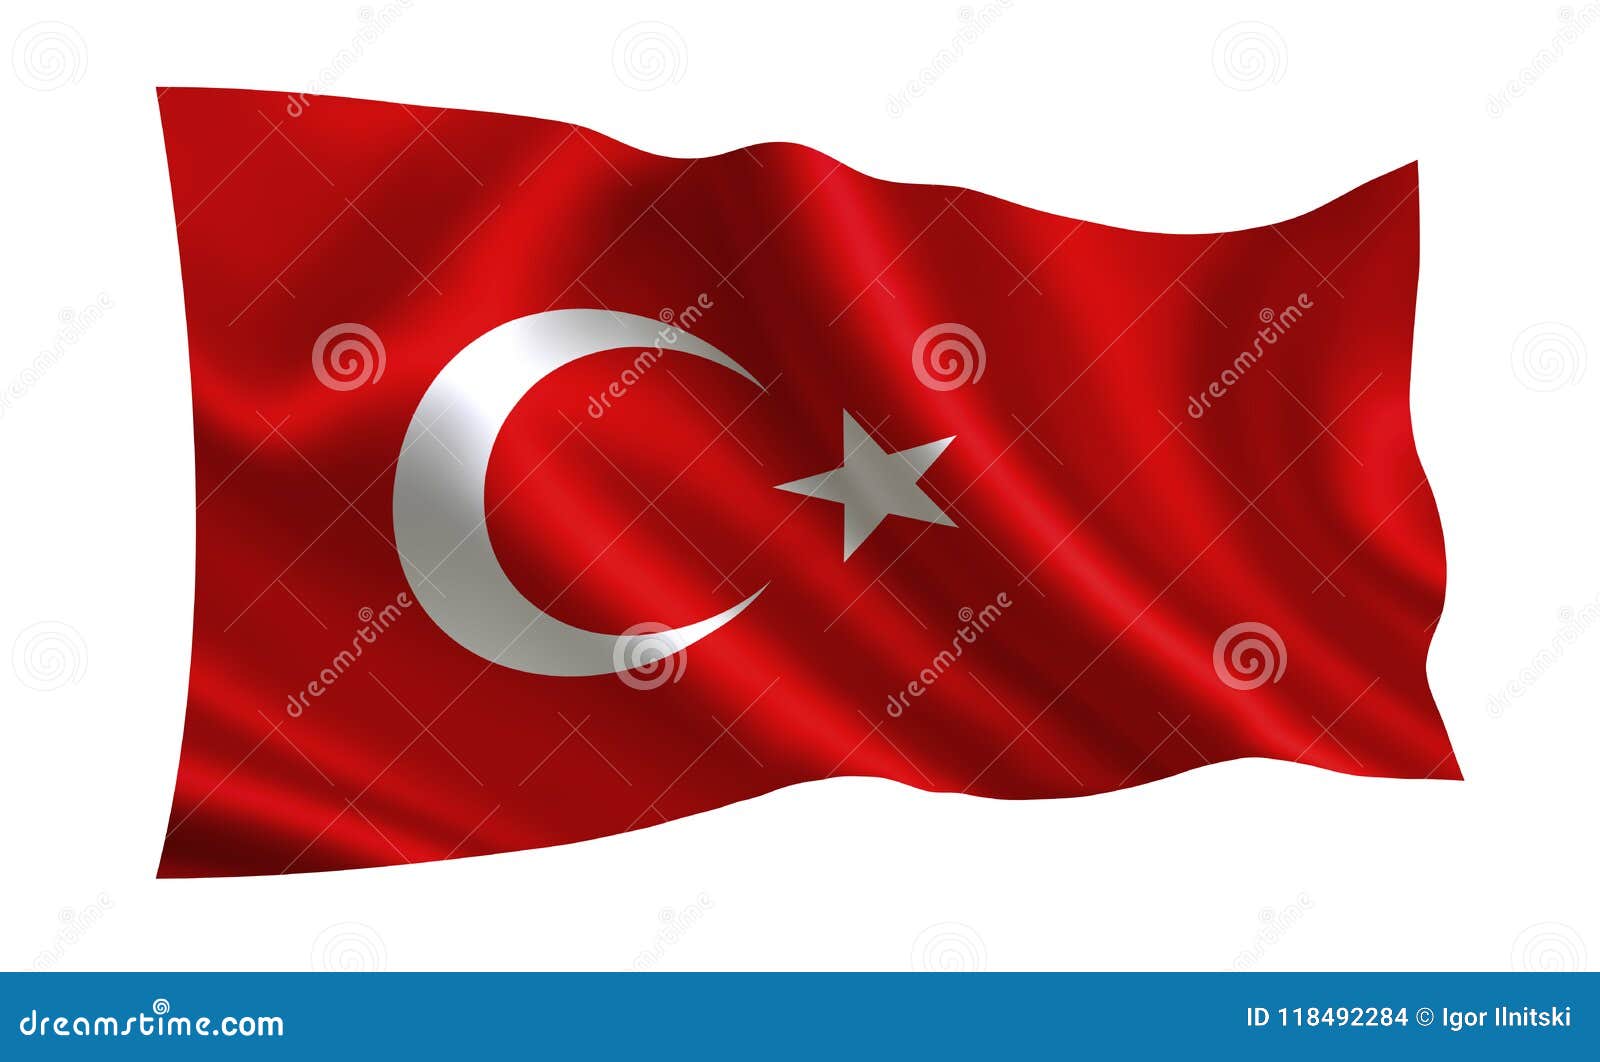 Сколько звезд на флаге турции. Символика Турции. Символ Турции животное. Знаки АХСК турков. Турки знак в шатре.